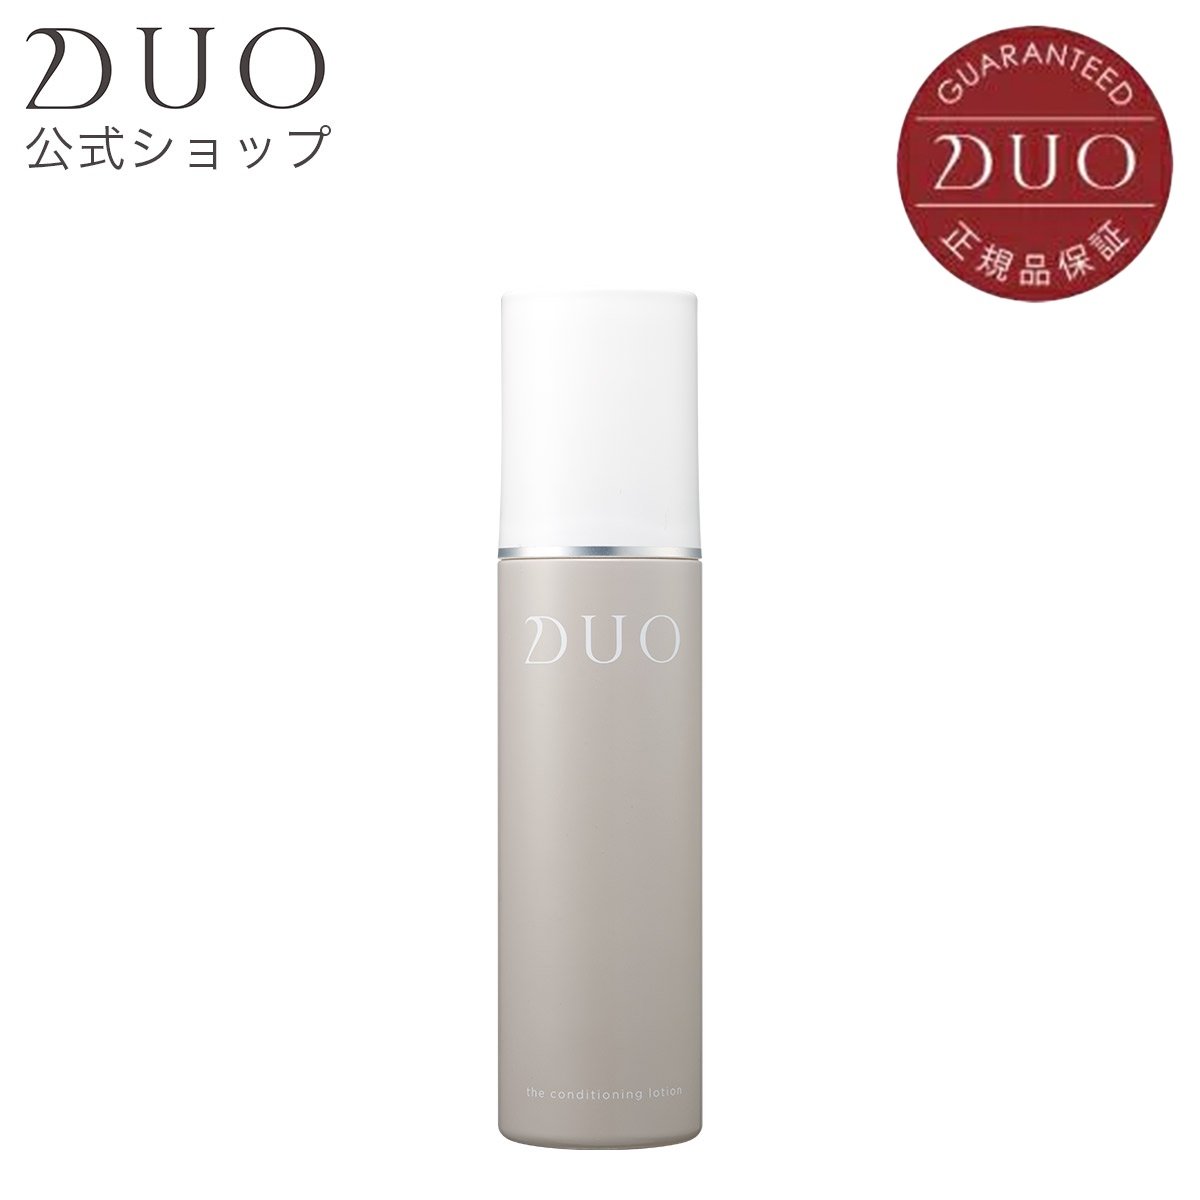 DUO公式 ザ コンディショニングローション 保湿 肌ひきしめ 柔軟 コンディショニング ミスト 乾燥 ゆらぎ 母の日